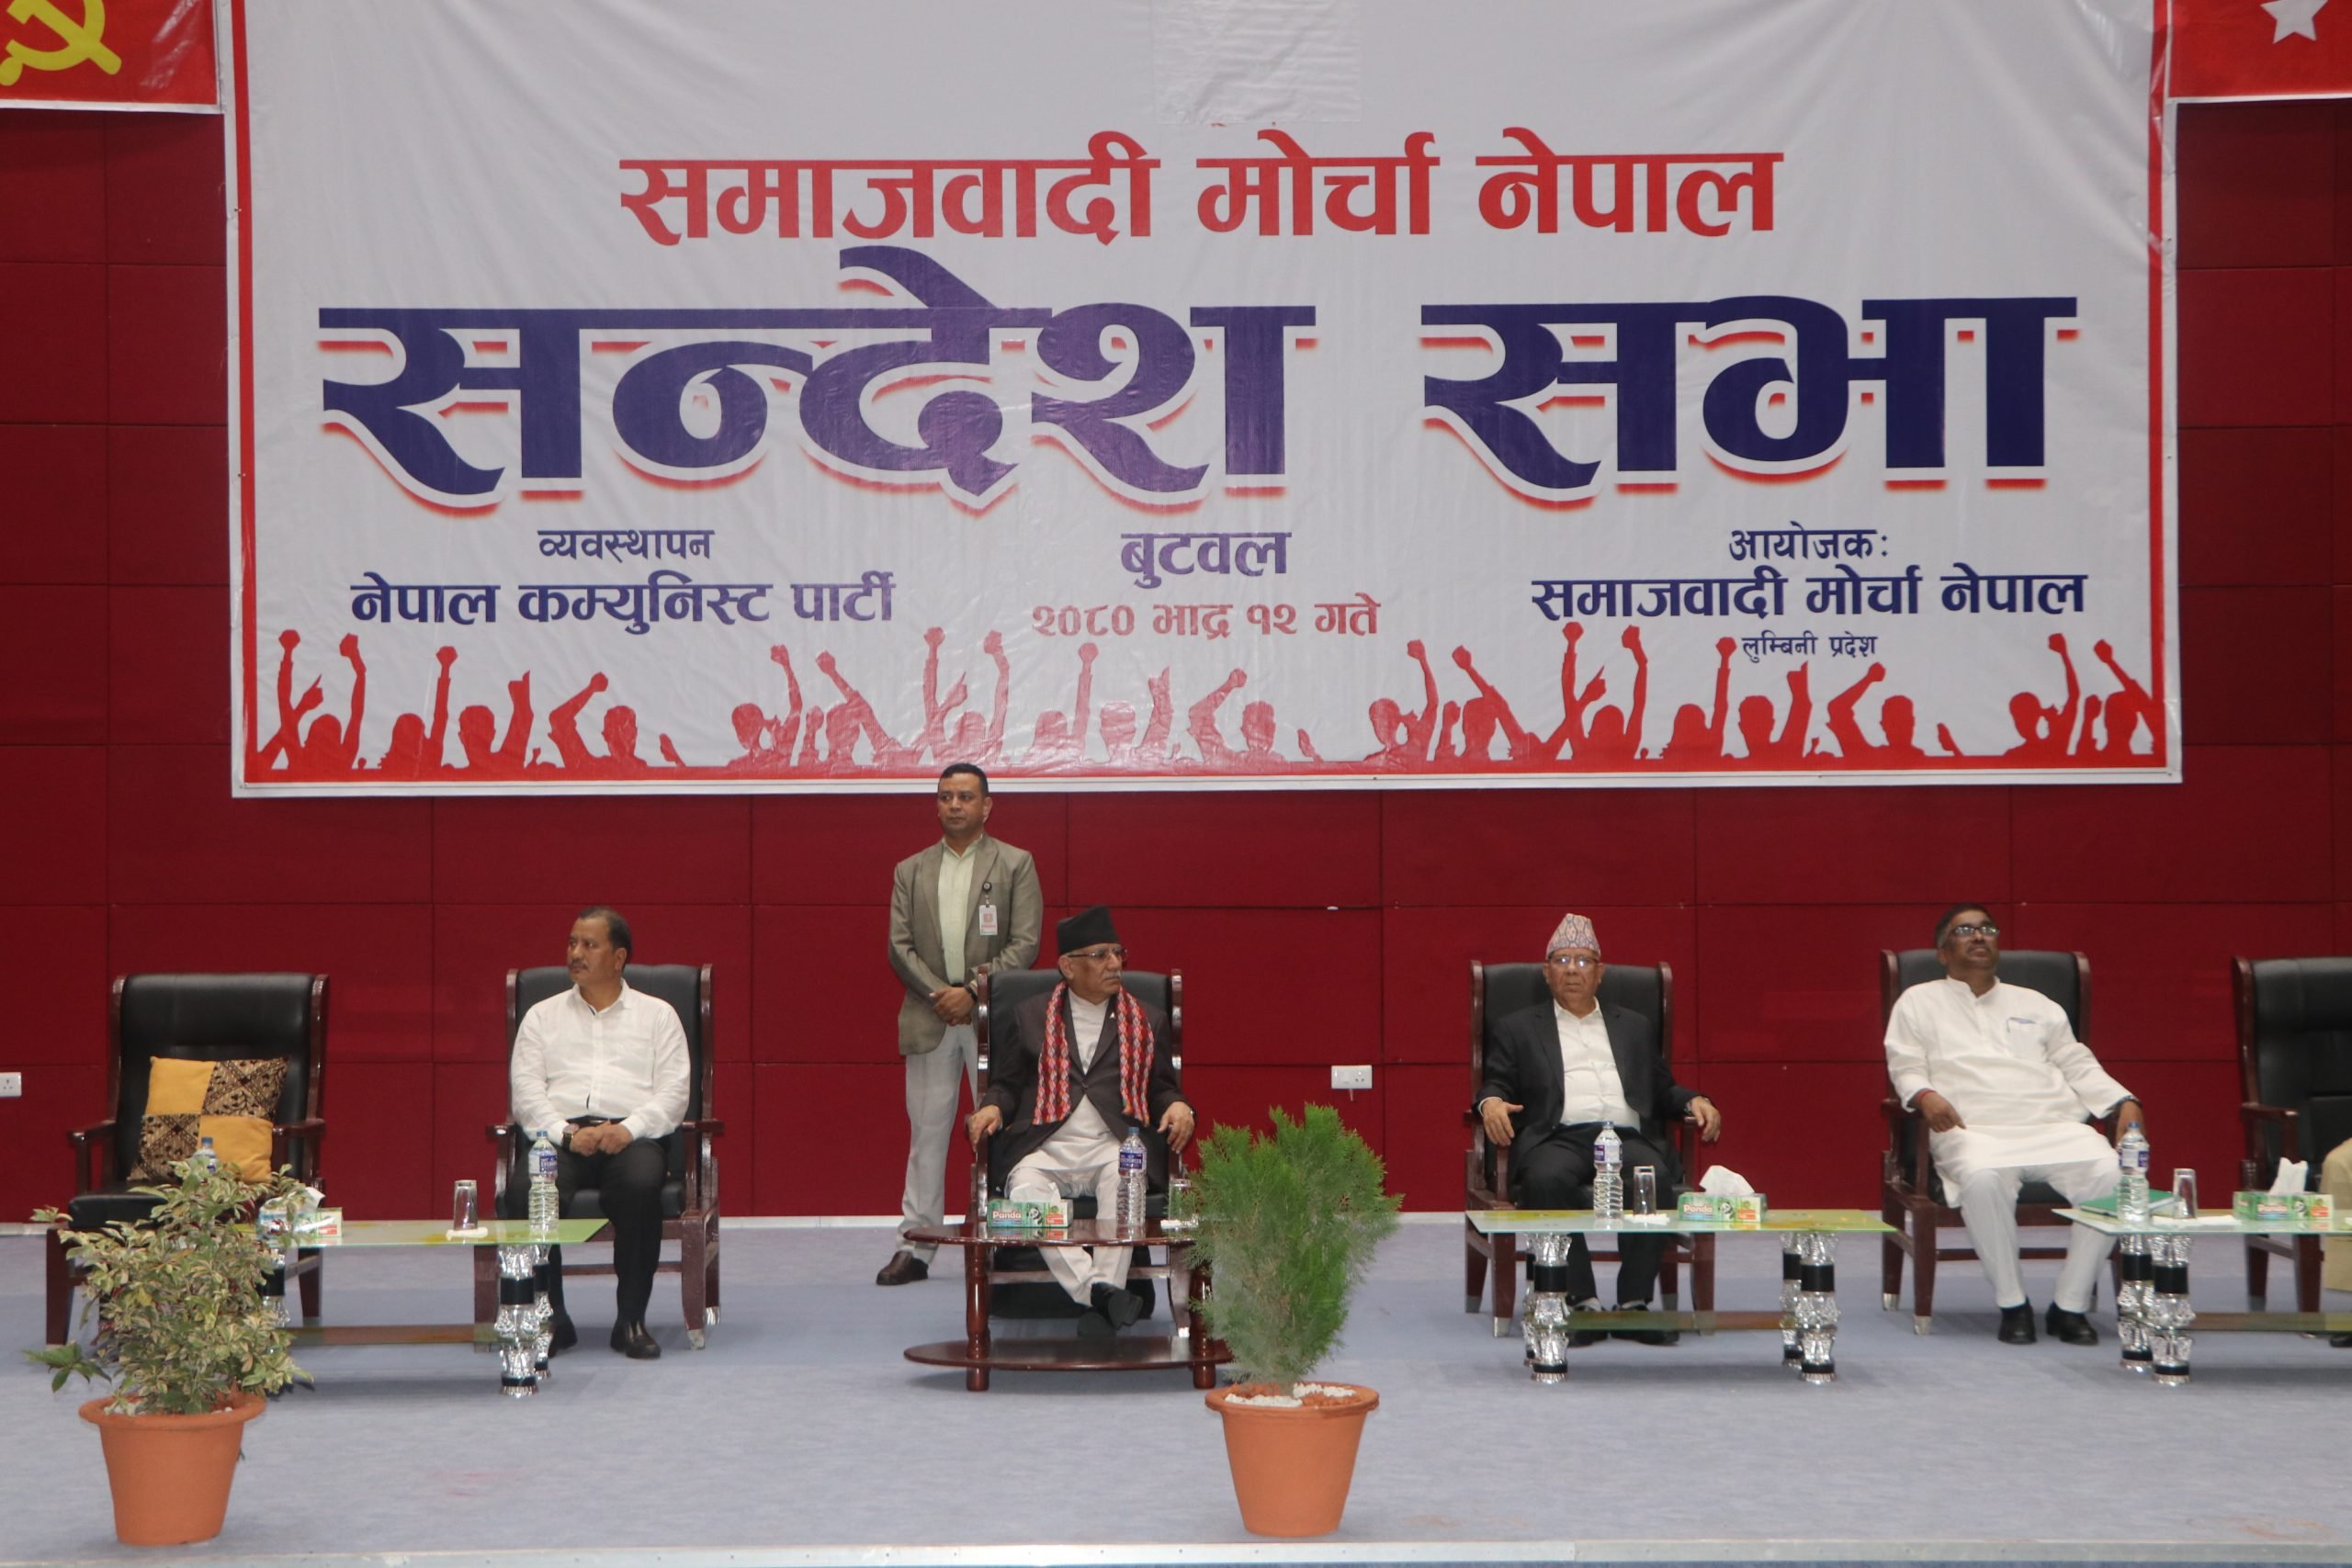 लुम्बिनी प्रदेशमा समाजवादी मोर्चा : जिल्ला जिल्लामा संगठन विस्तार गर्दै